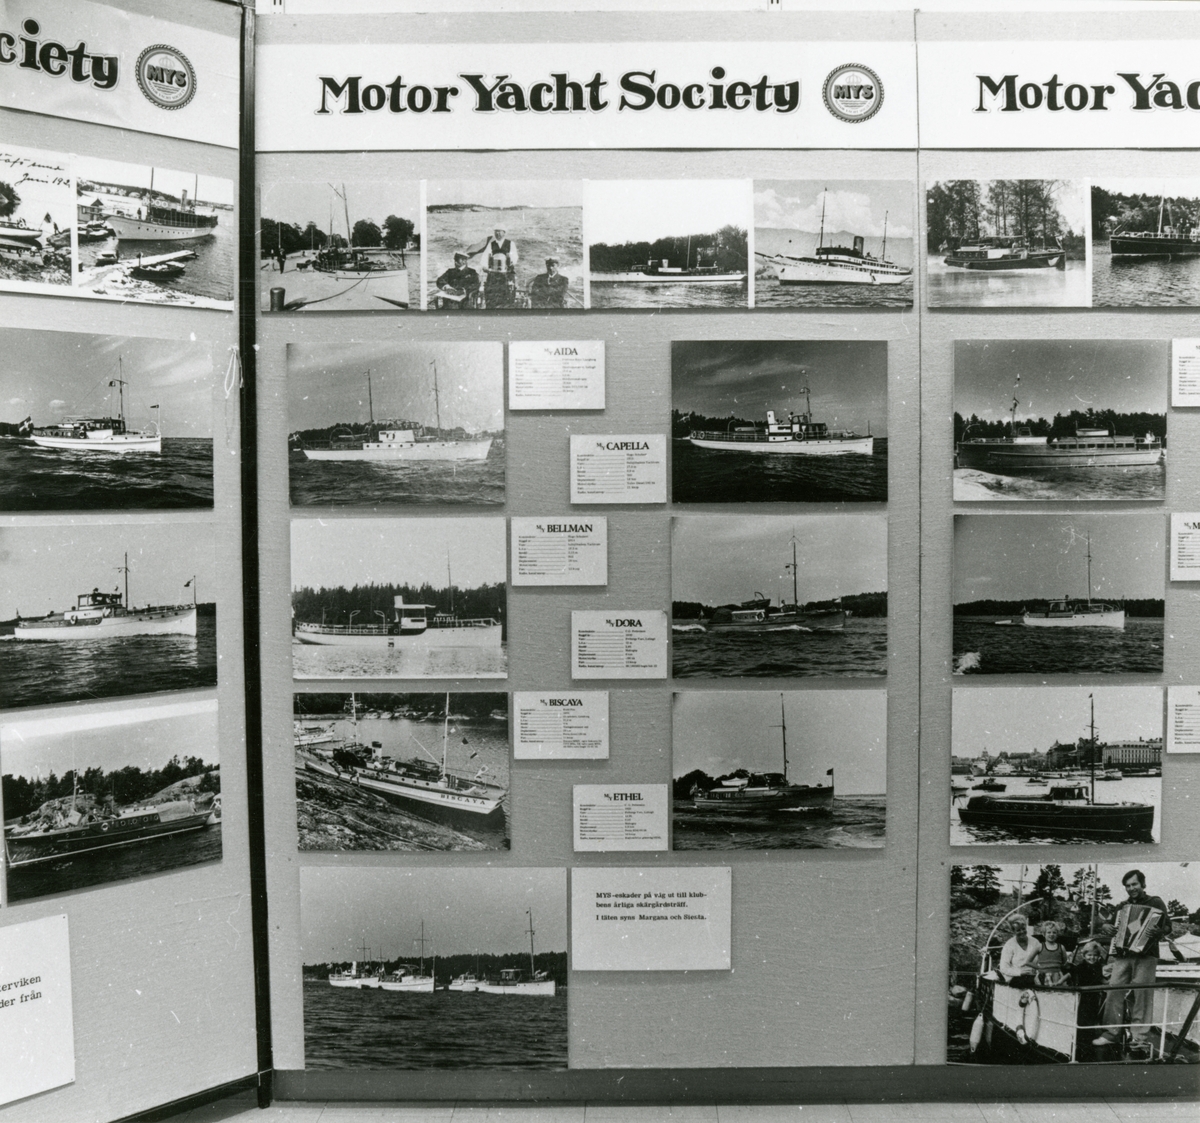 Utställningen "Fritidsbåtar på museum". Skärm med fotografier av "MYS" - Motor Yacht Societys båtar